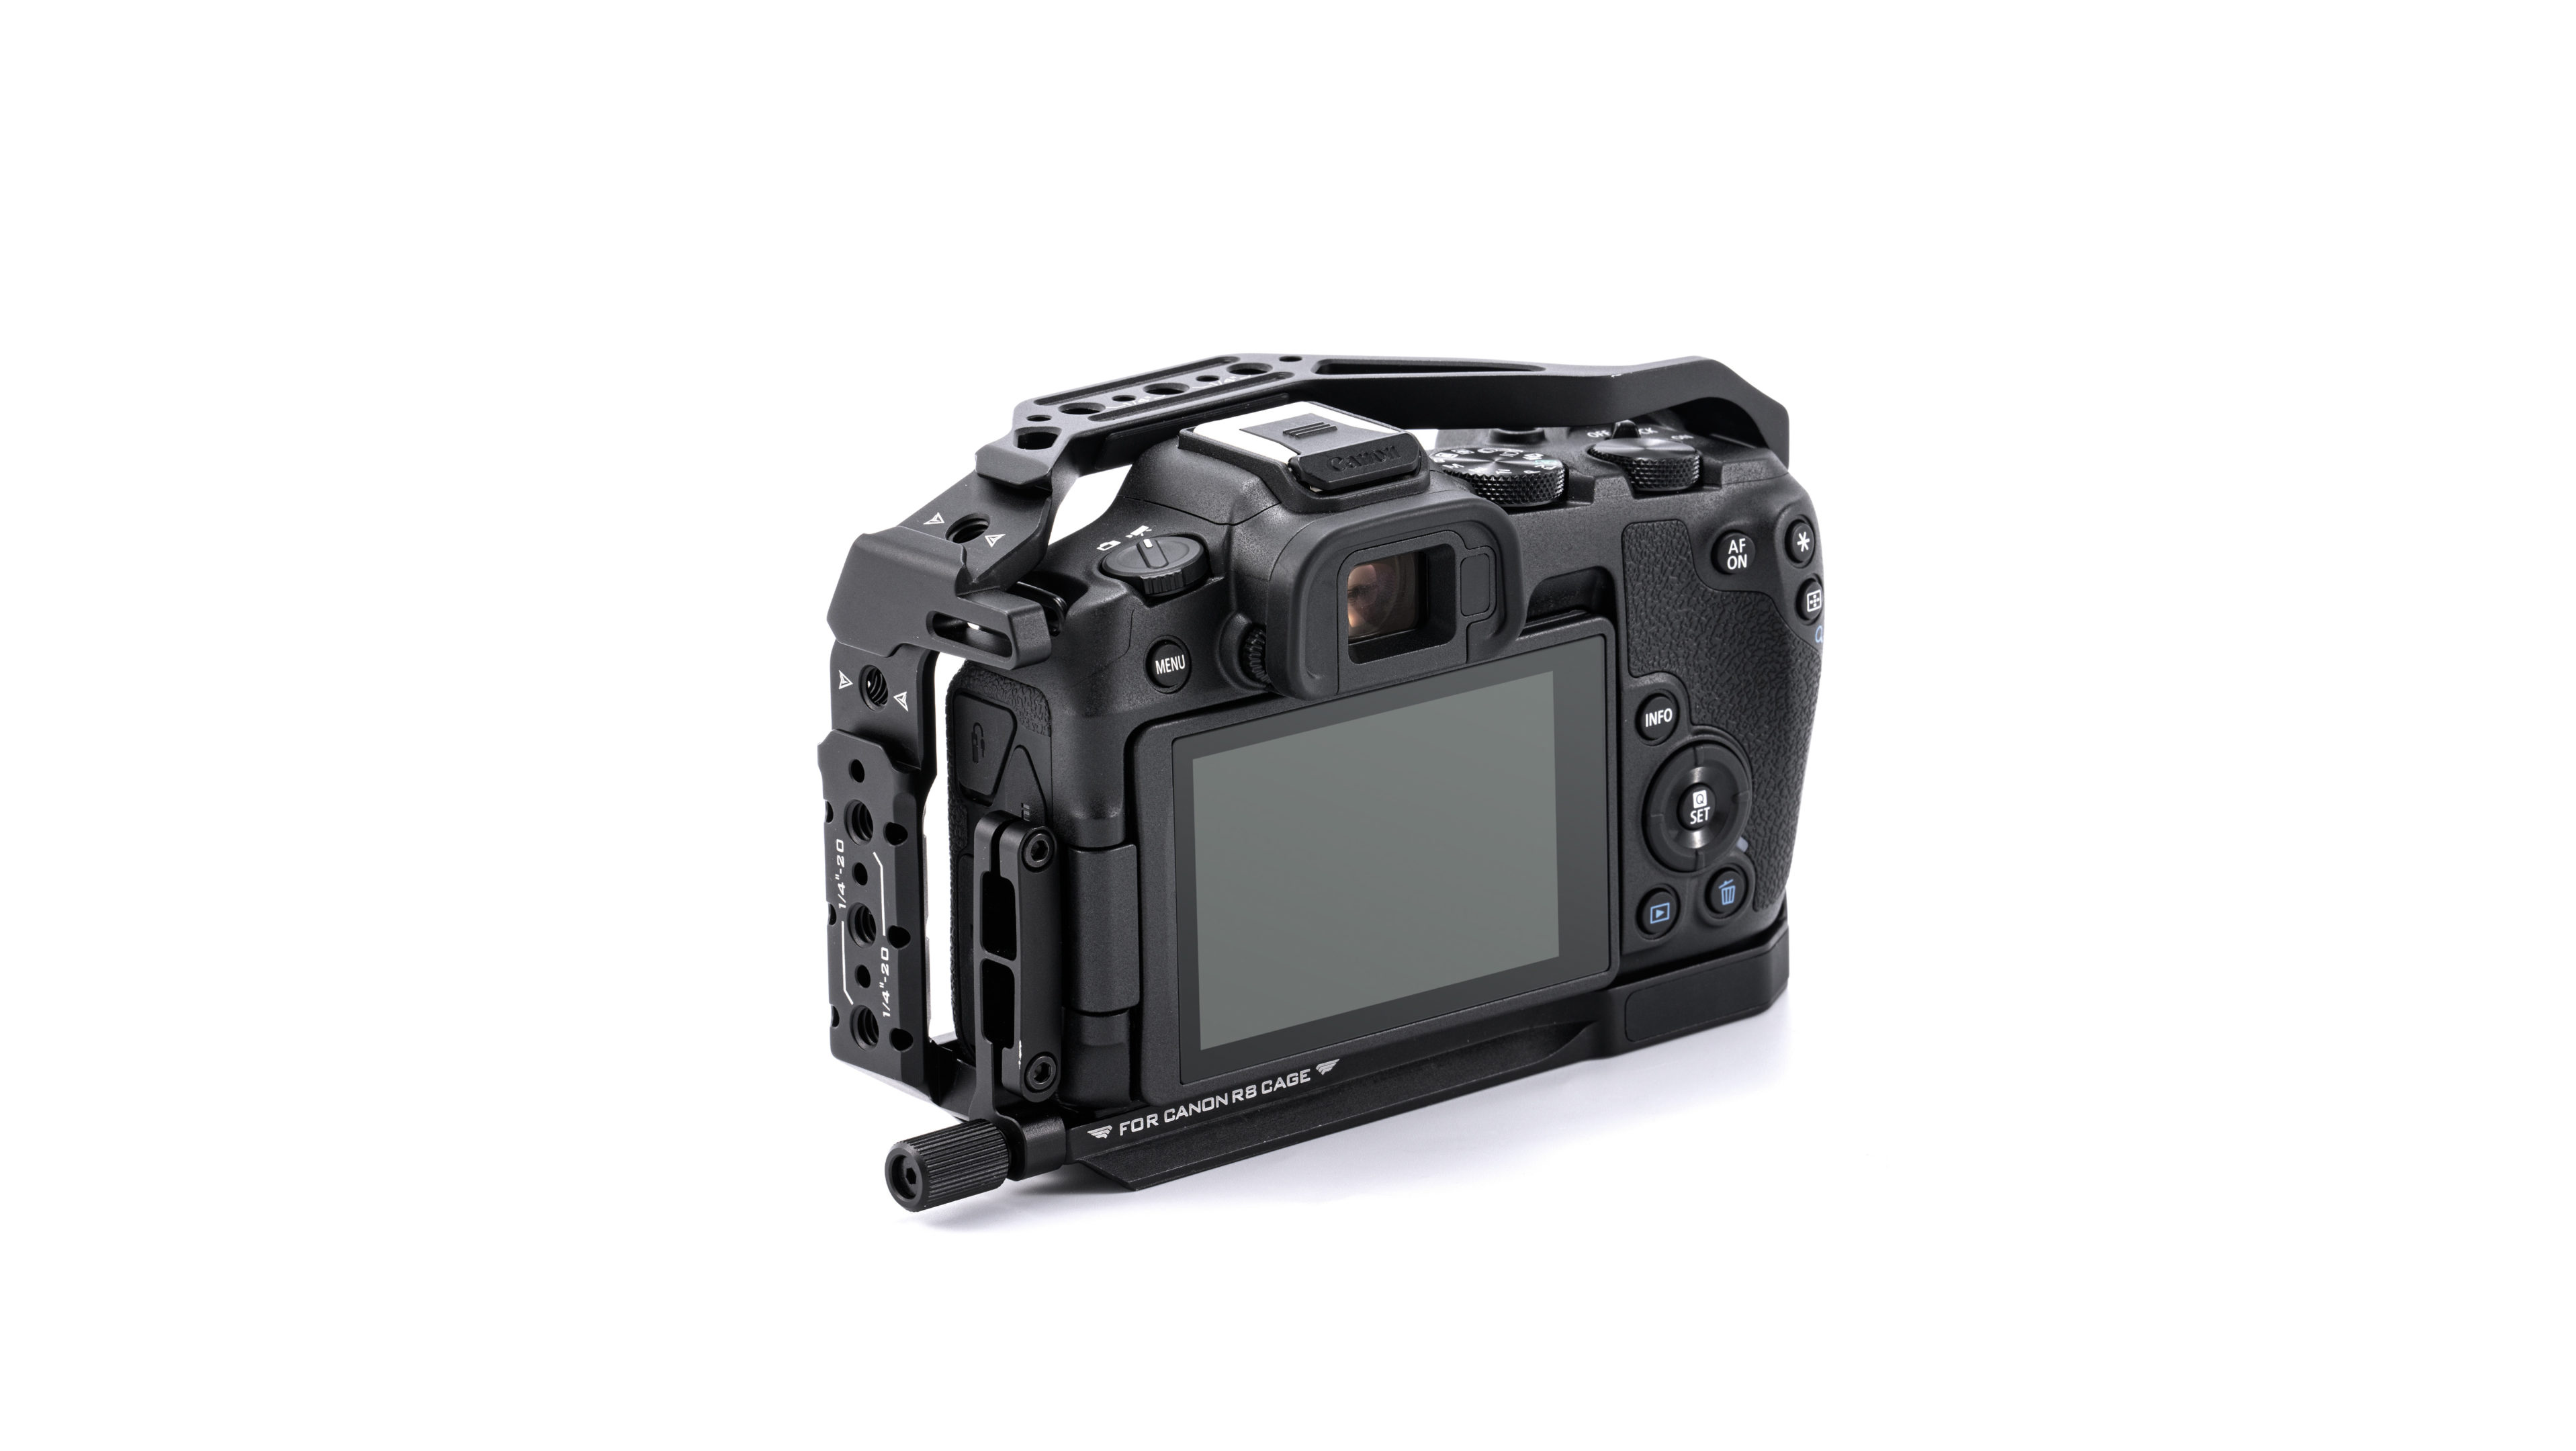 Full Camera Cage for Canon R8 - Black (Open Box)